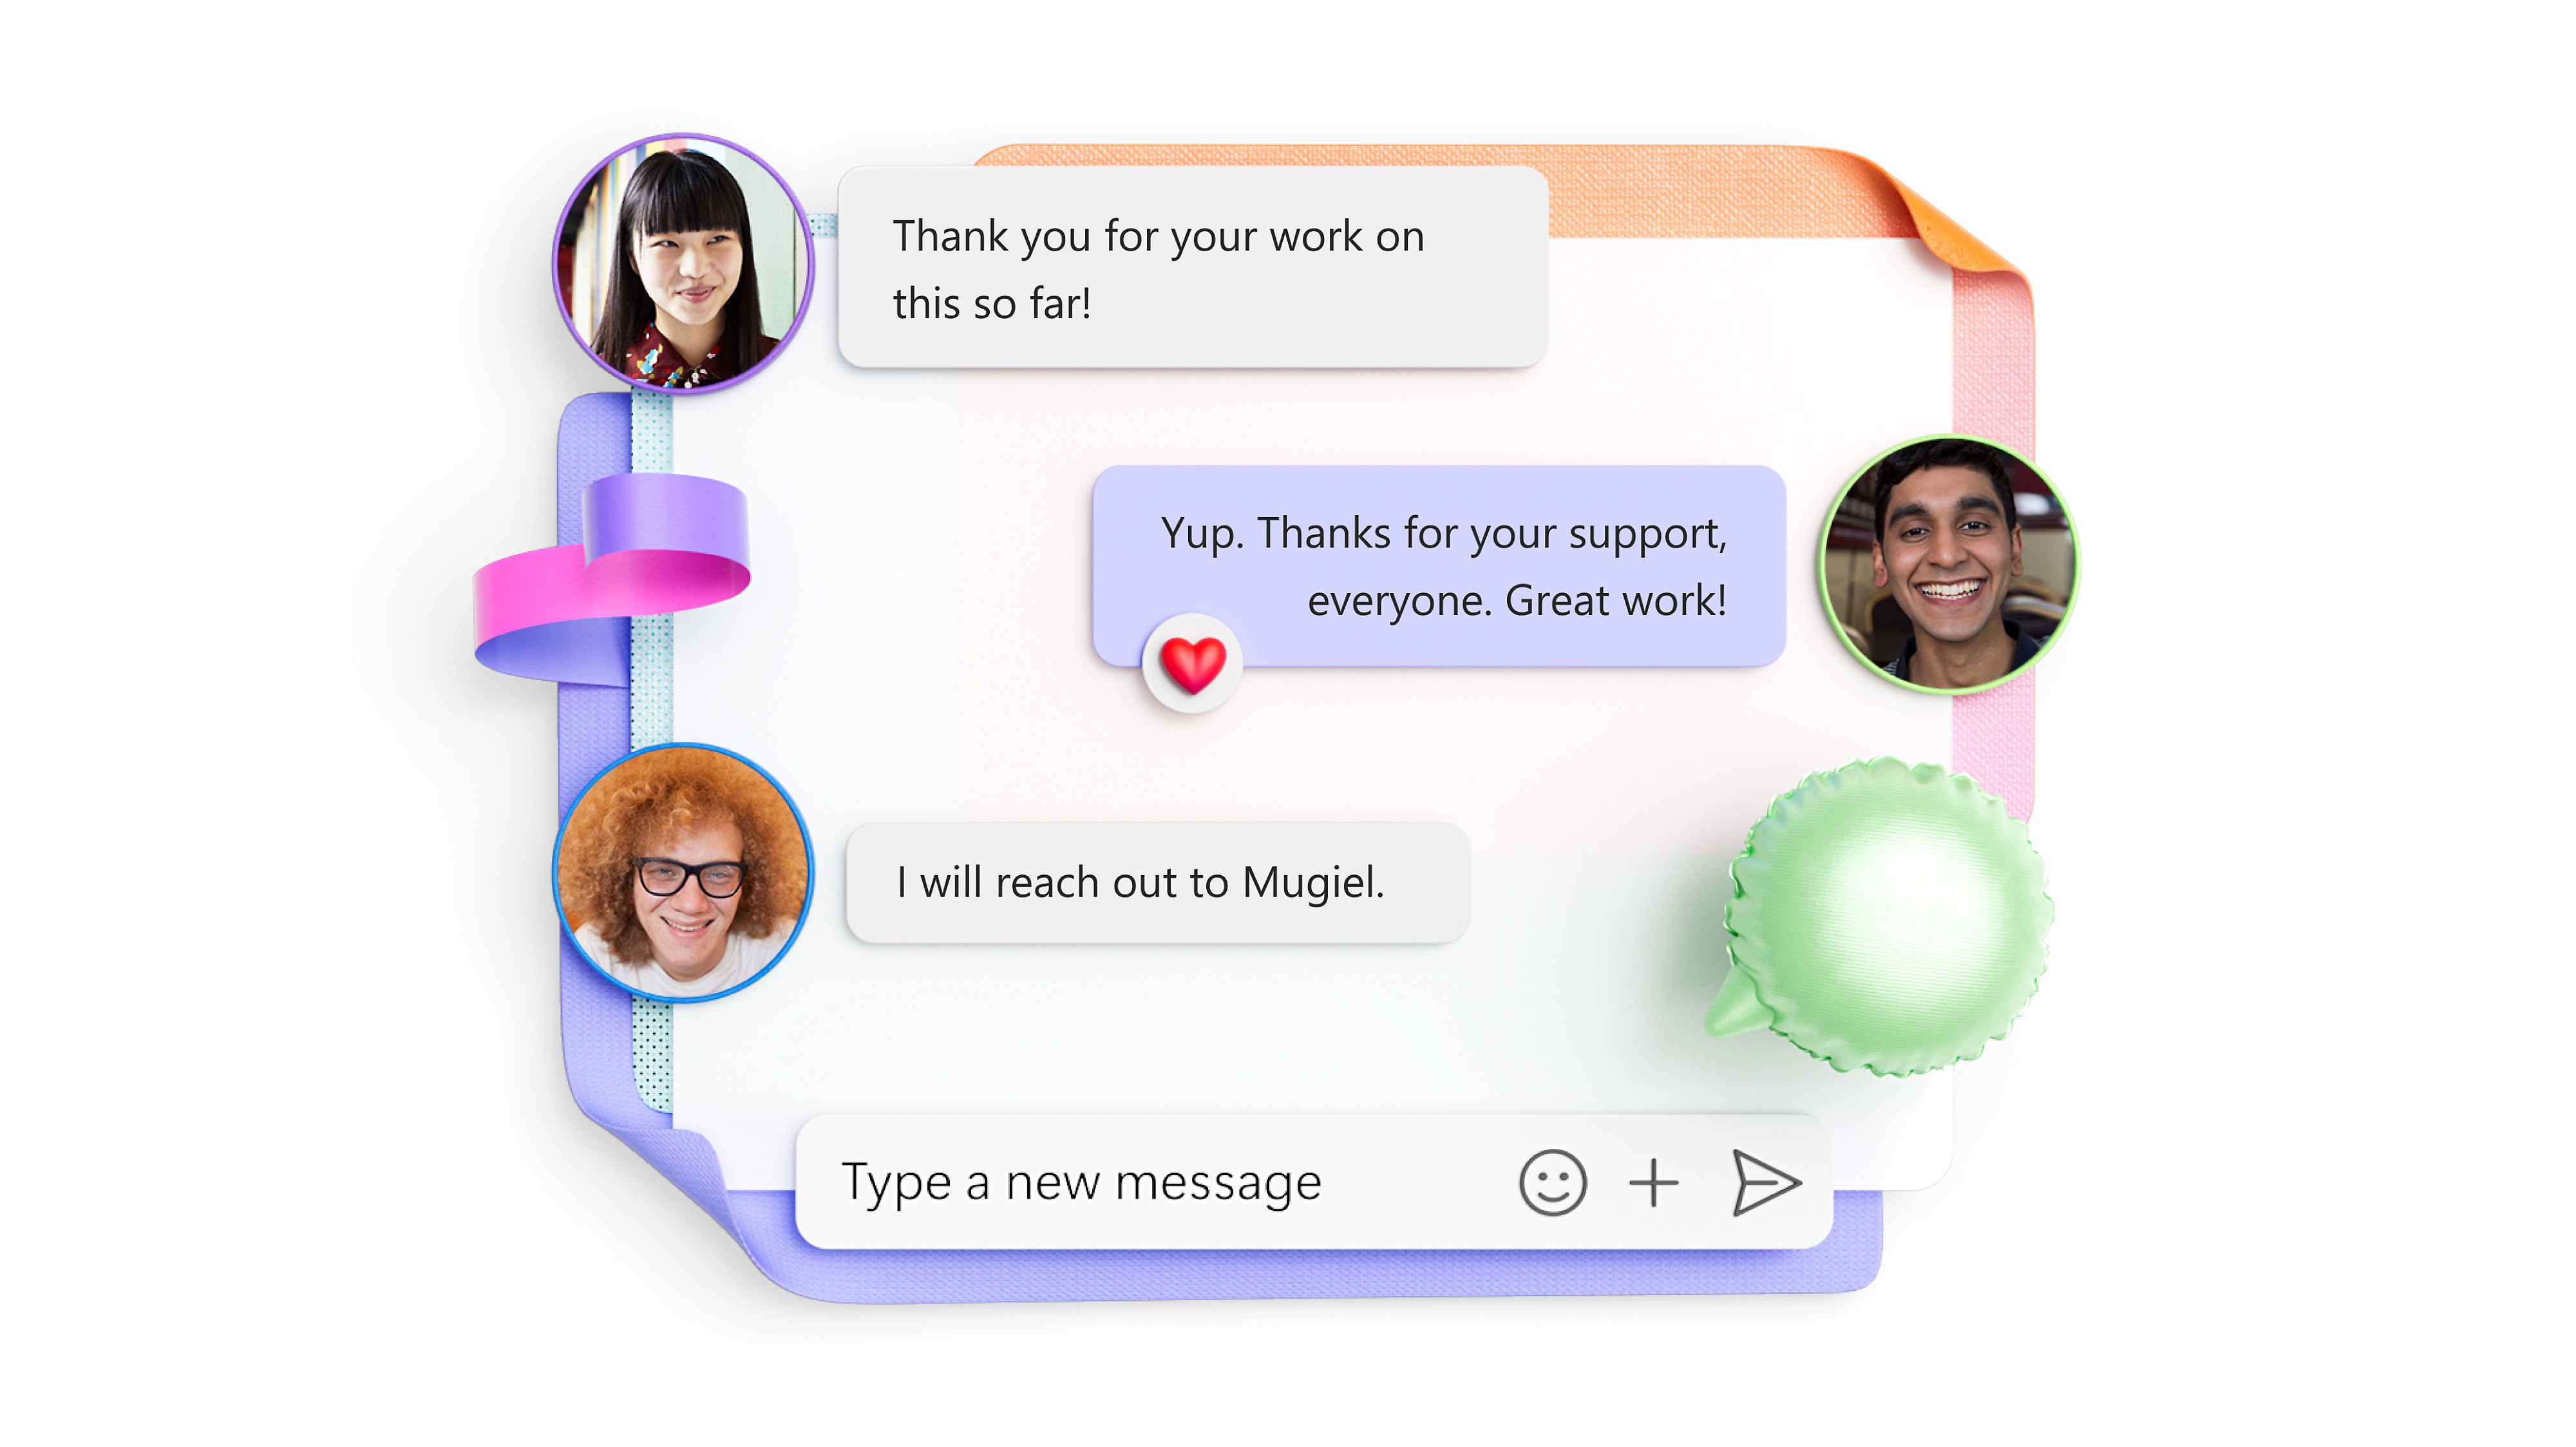 En desktopvisning af et Teams-videoopkald, hvor der vises en præsentation og tekstchat, samt en mobilvisning af en persons chatprofil i Teams.